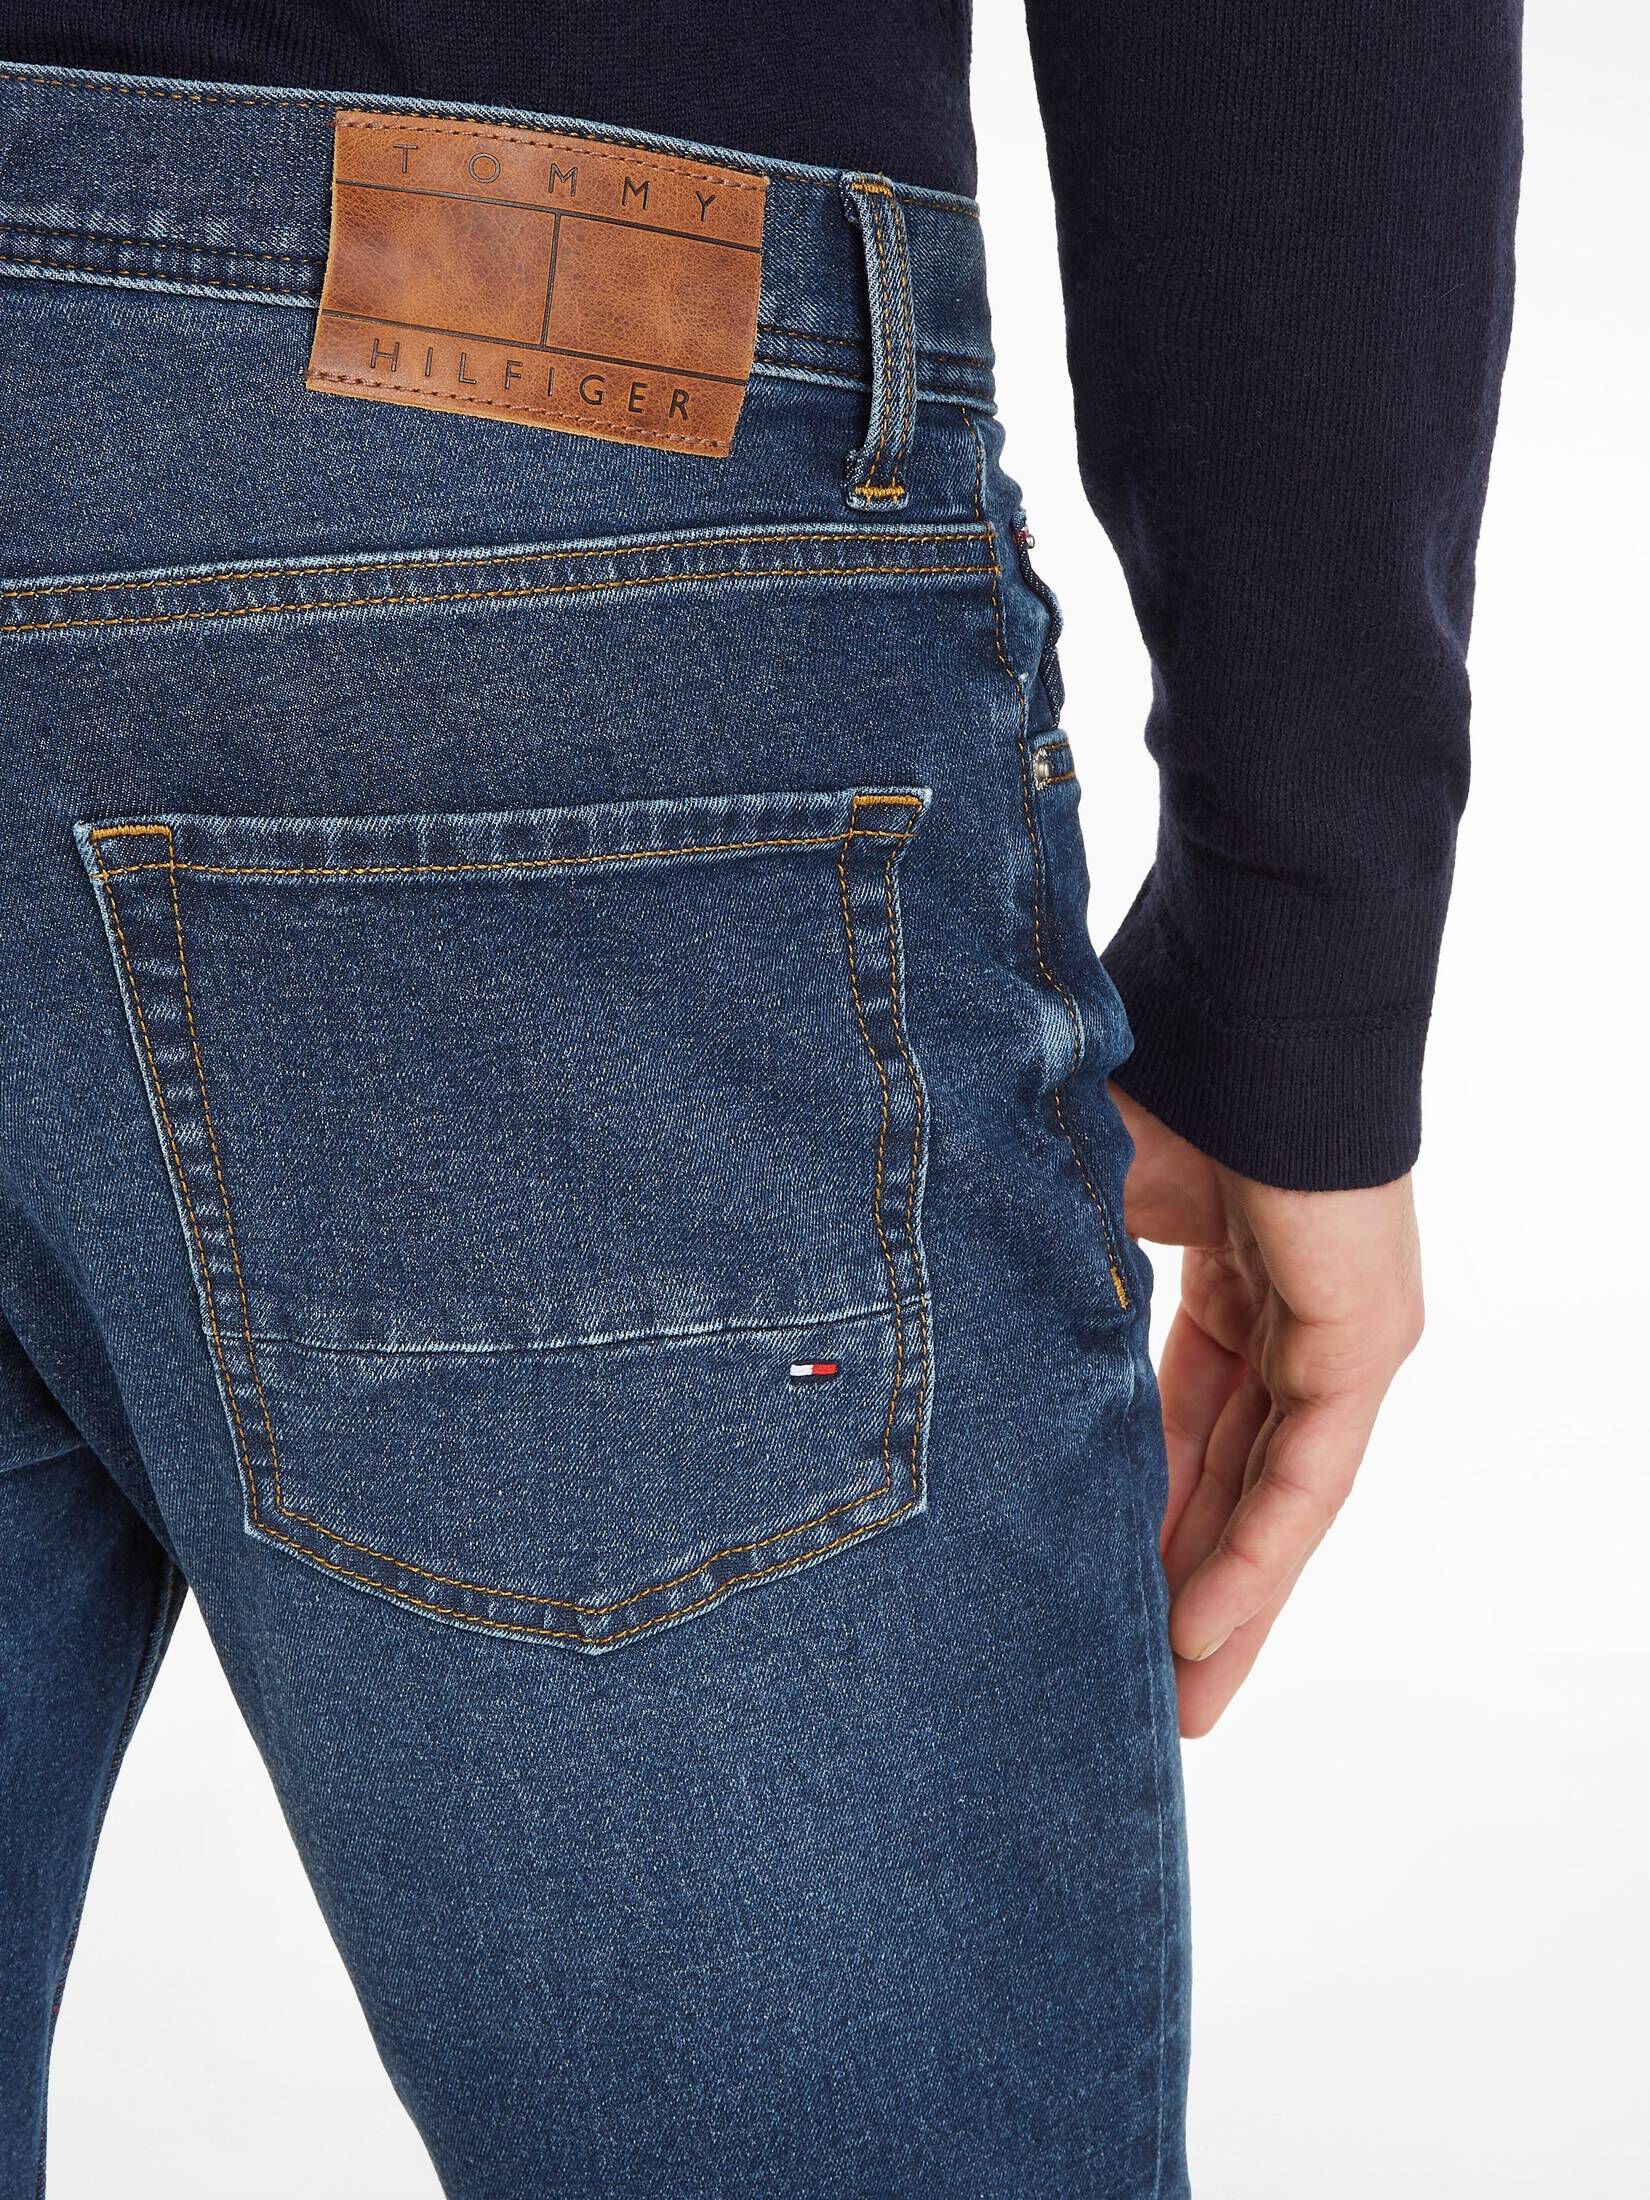 STERNE Hilfiger TH DENTON Jeans STR Fit Herren kaufen engelhorn Tommy Straight |